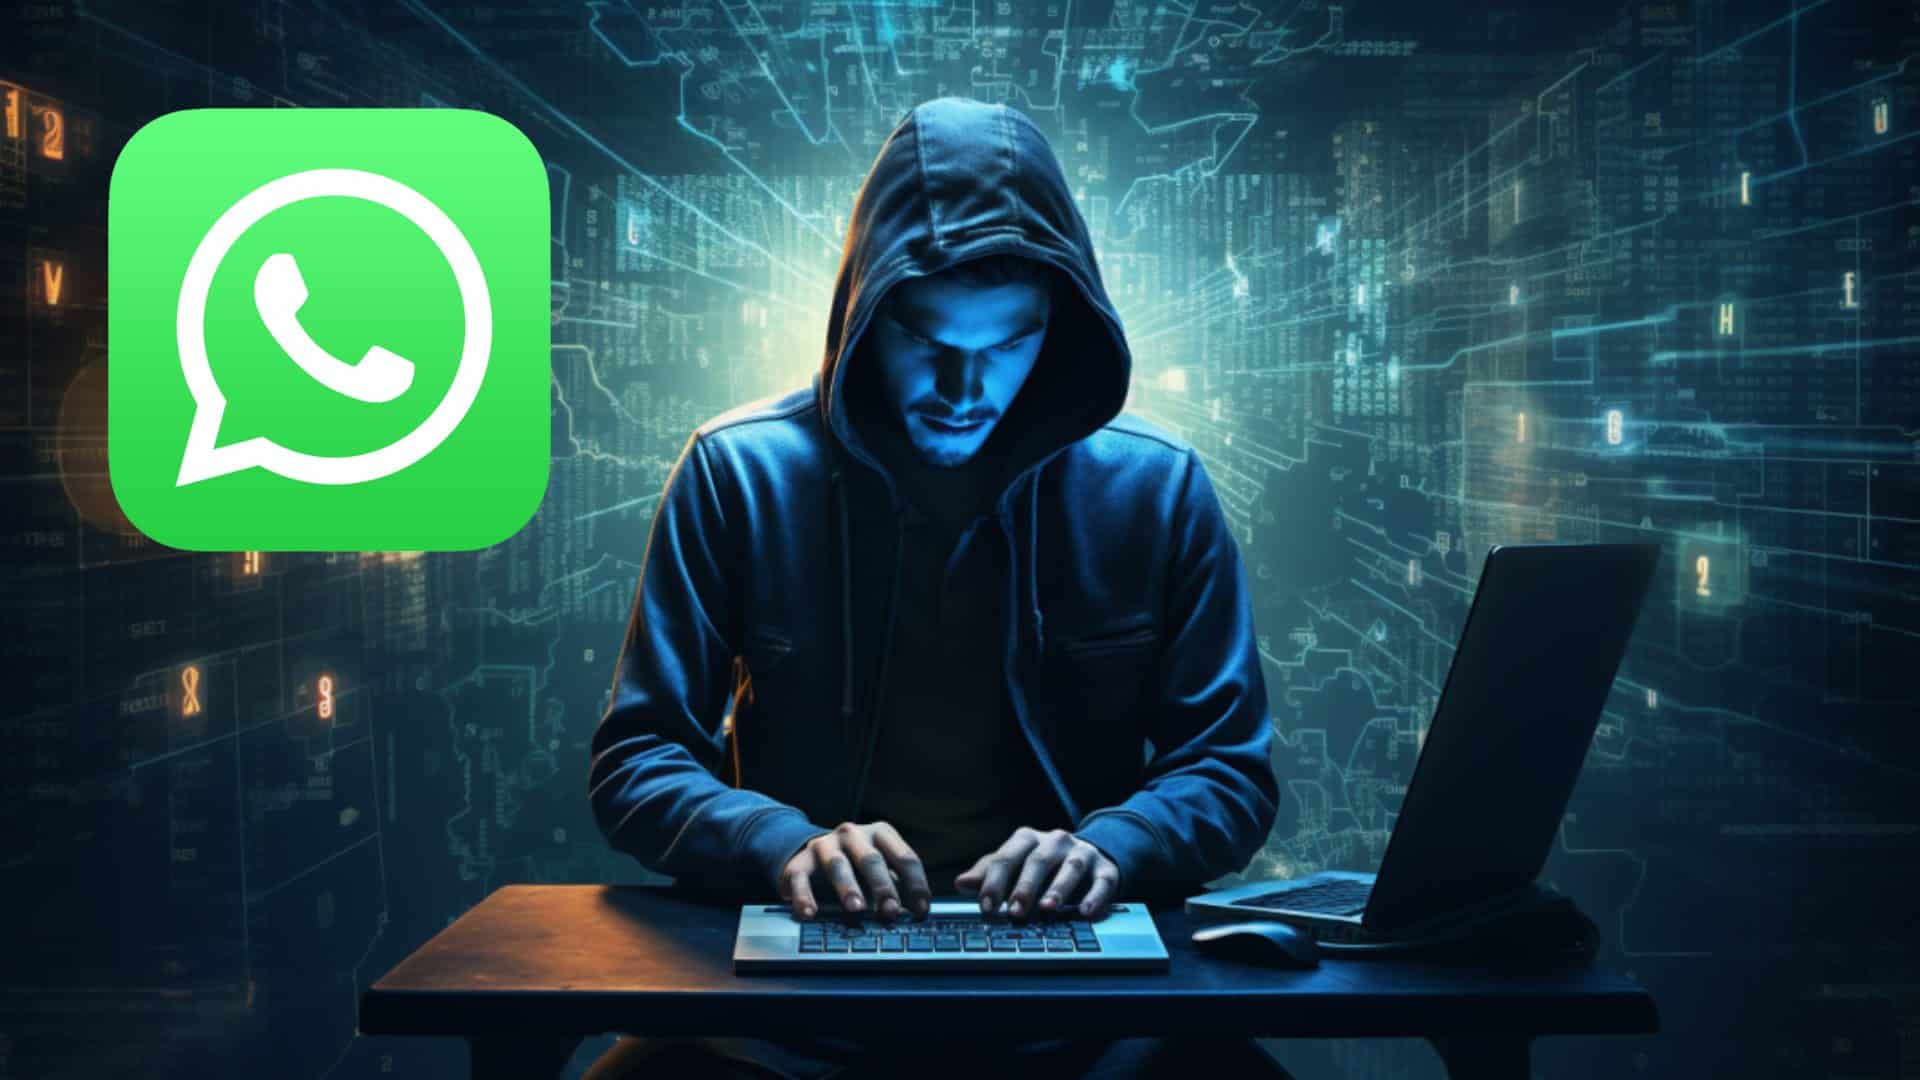 haccker activando en un ordenador el modo espia de whatsapp